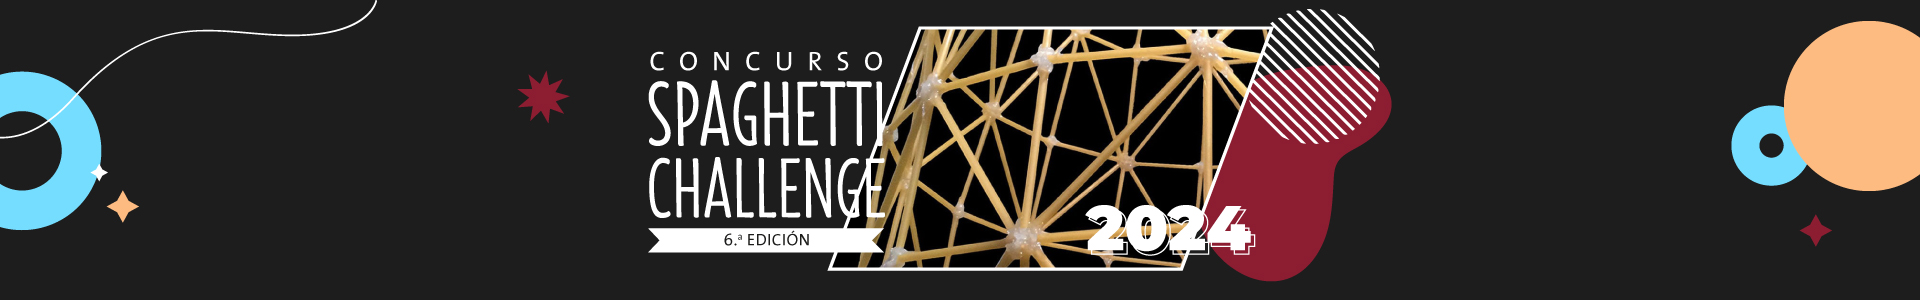 Concurso Spaghetti Challenge - Universidad ORT Uruguay